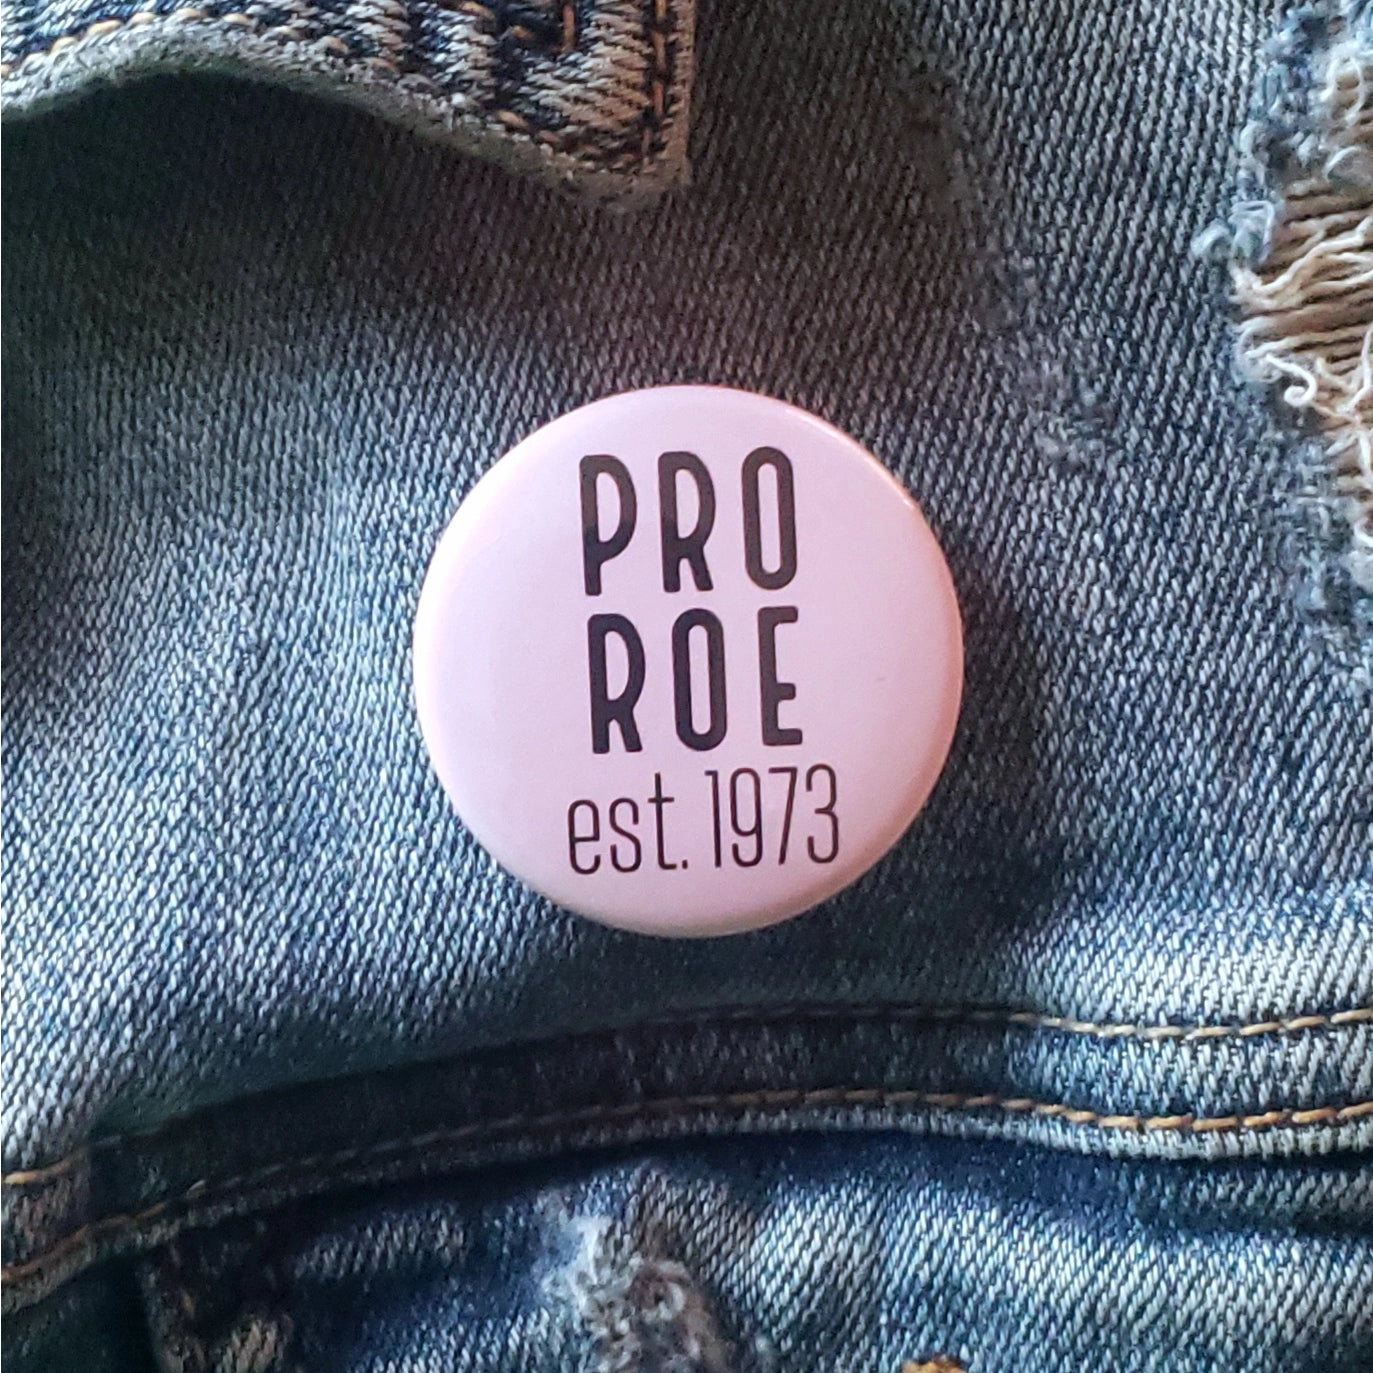 Pro Roe 1973 Button